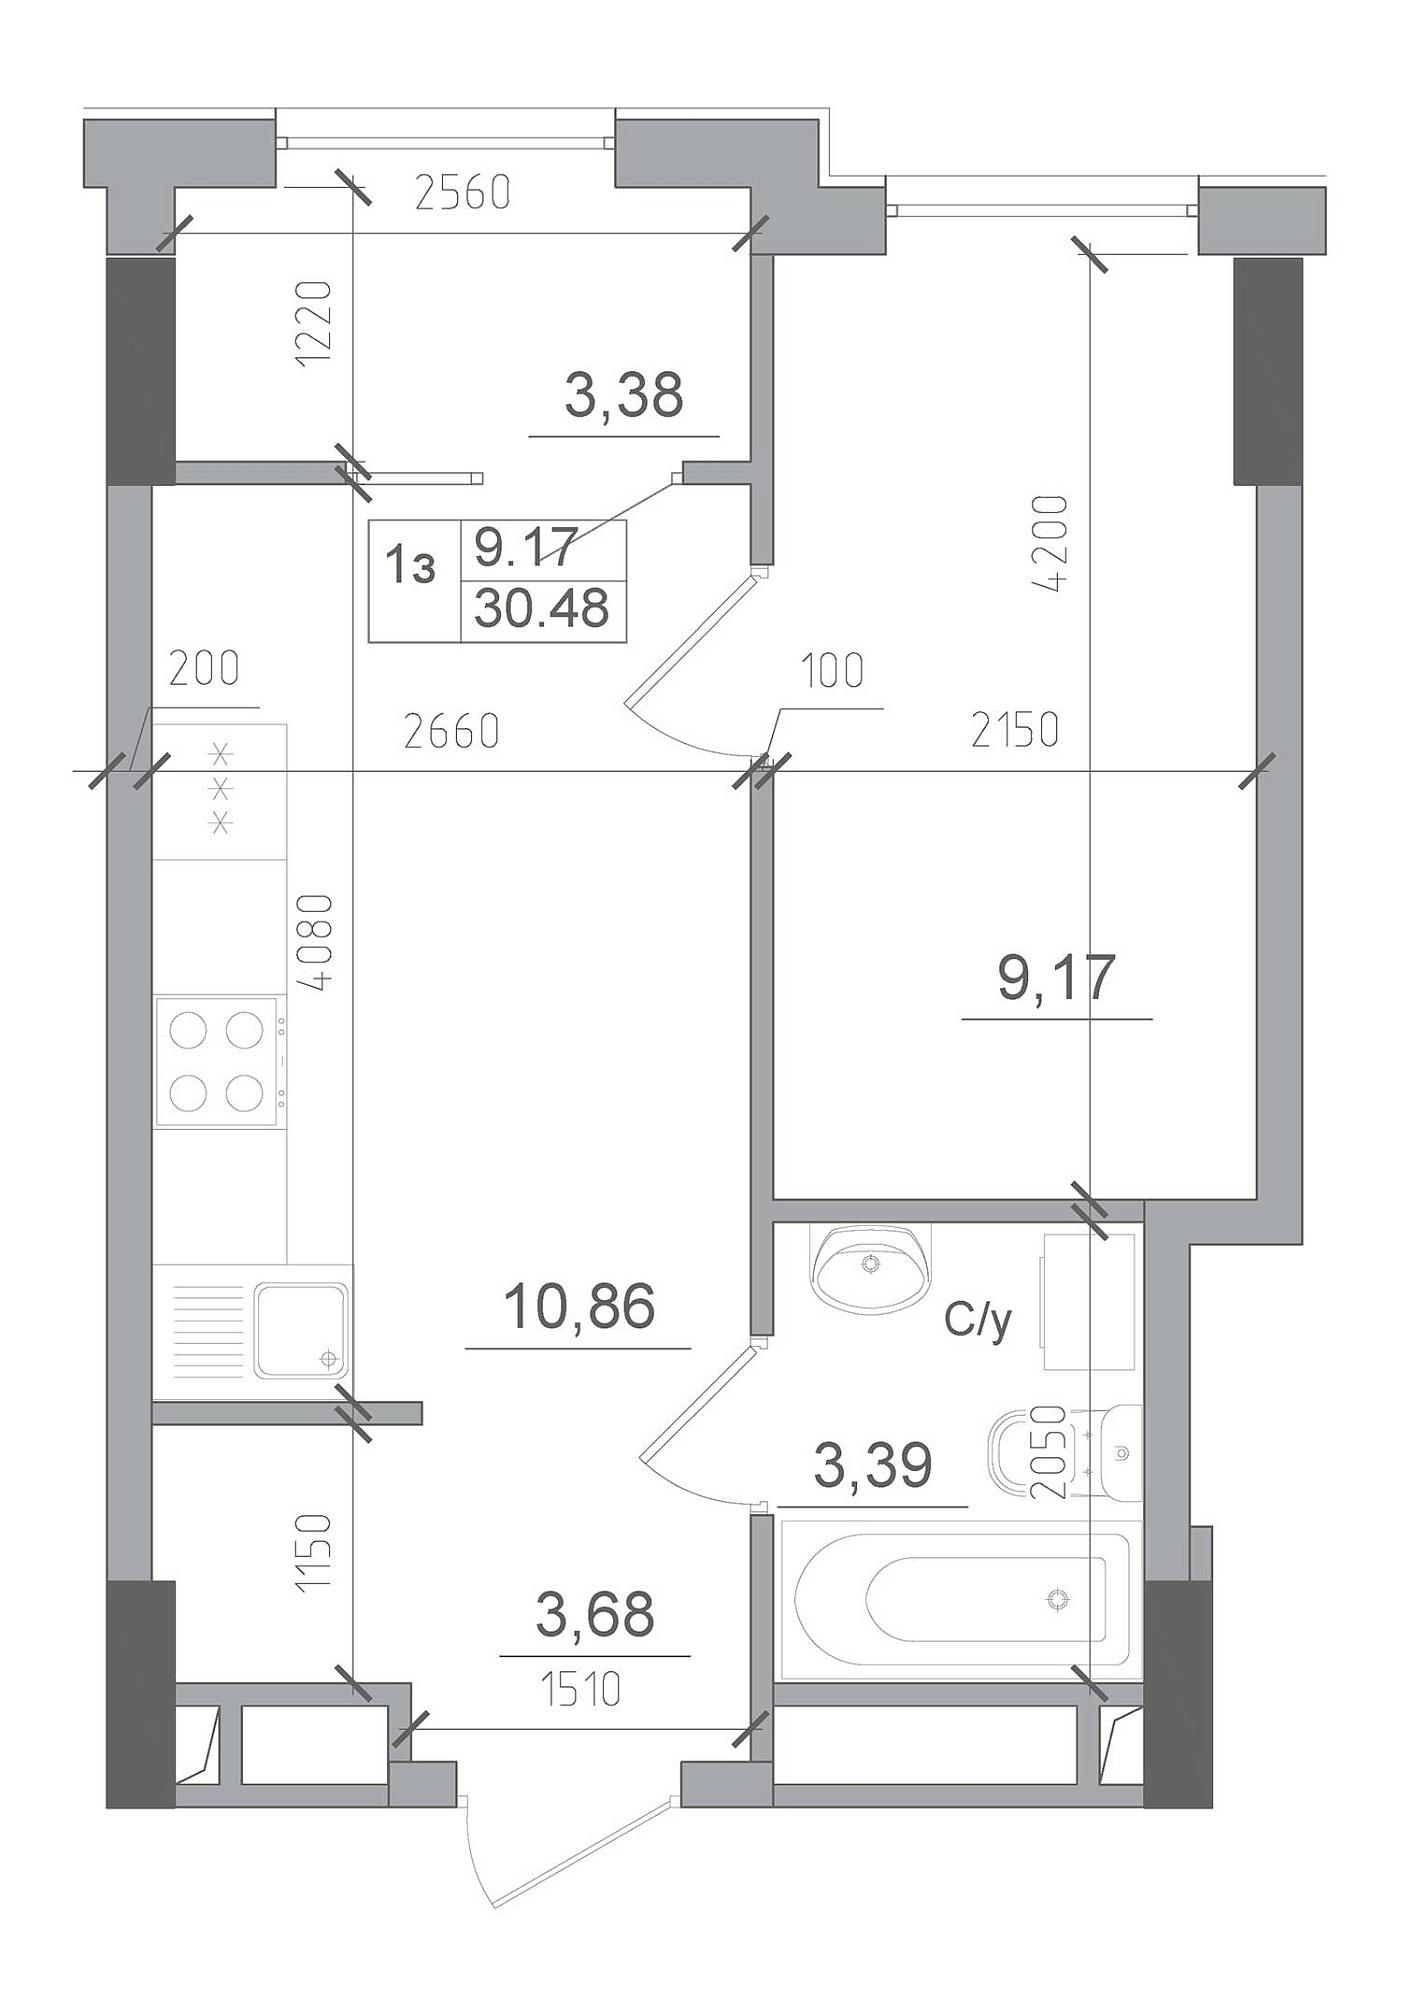 Планировка 1-к квартира площей 30.48м2, AB-22-10/00013.